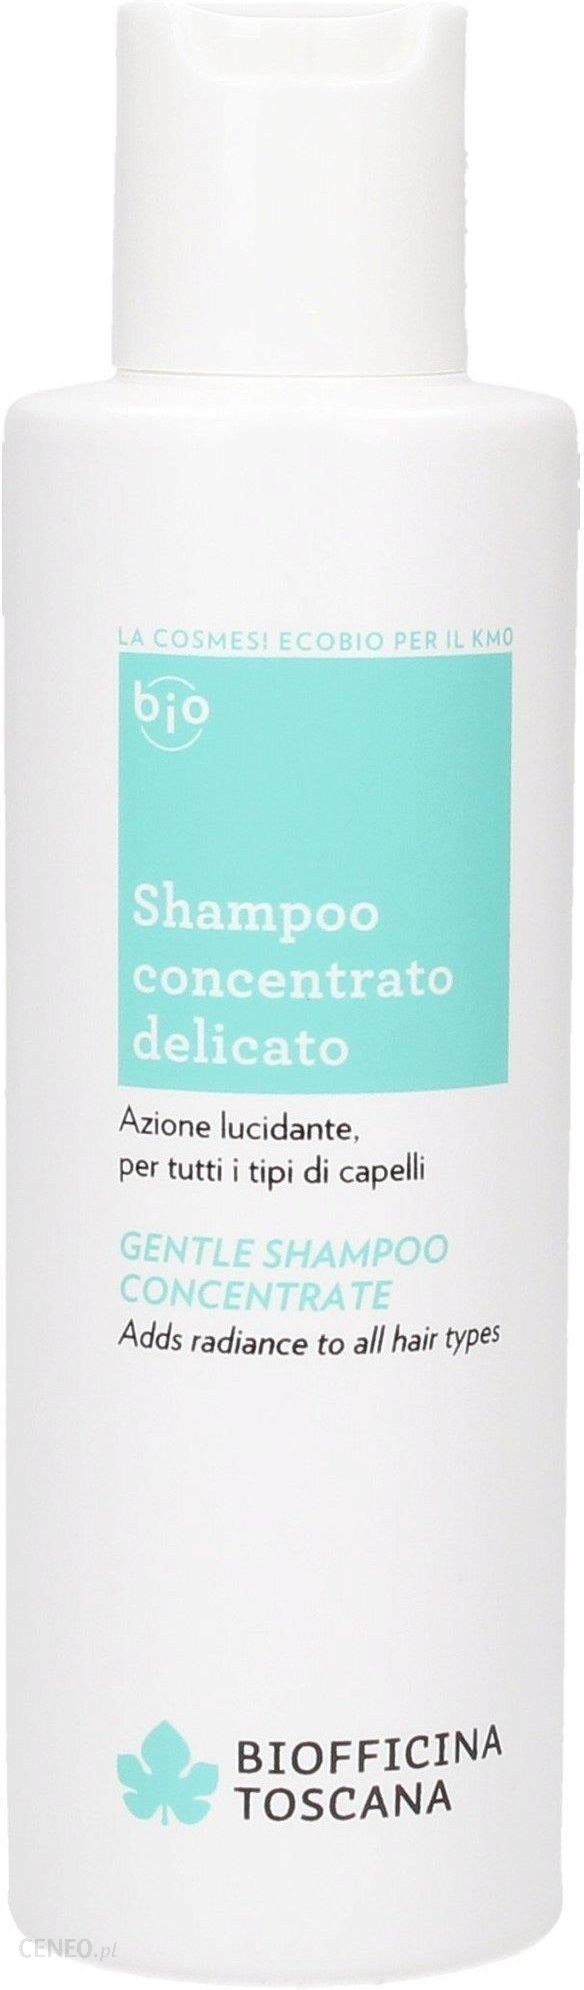 biofficina toscana delikatny szampon wizaz